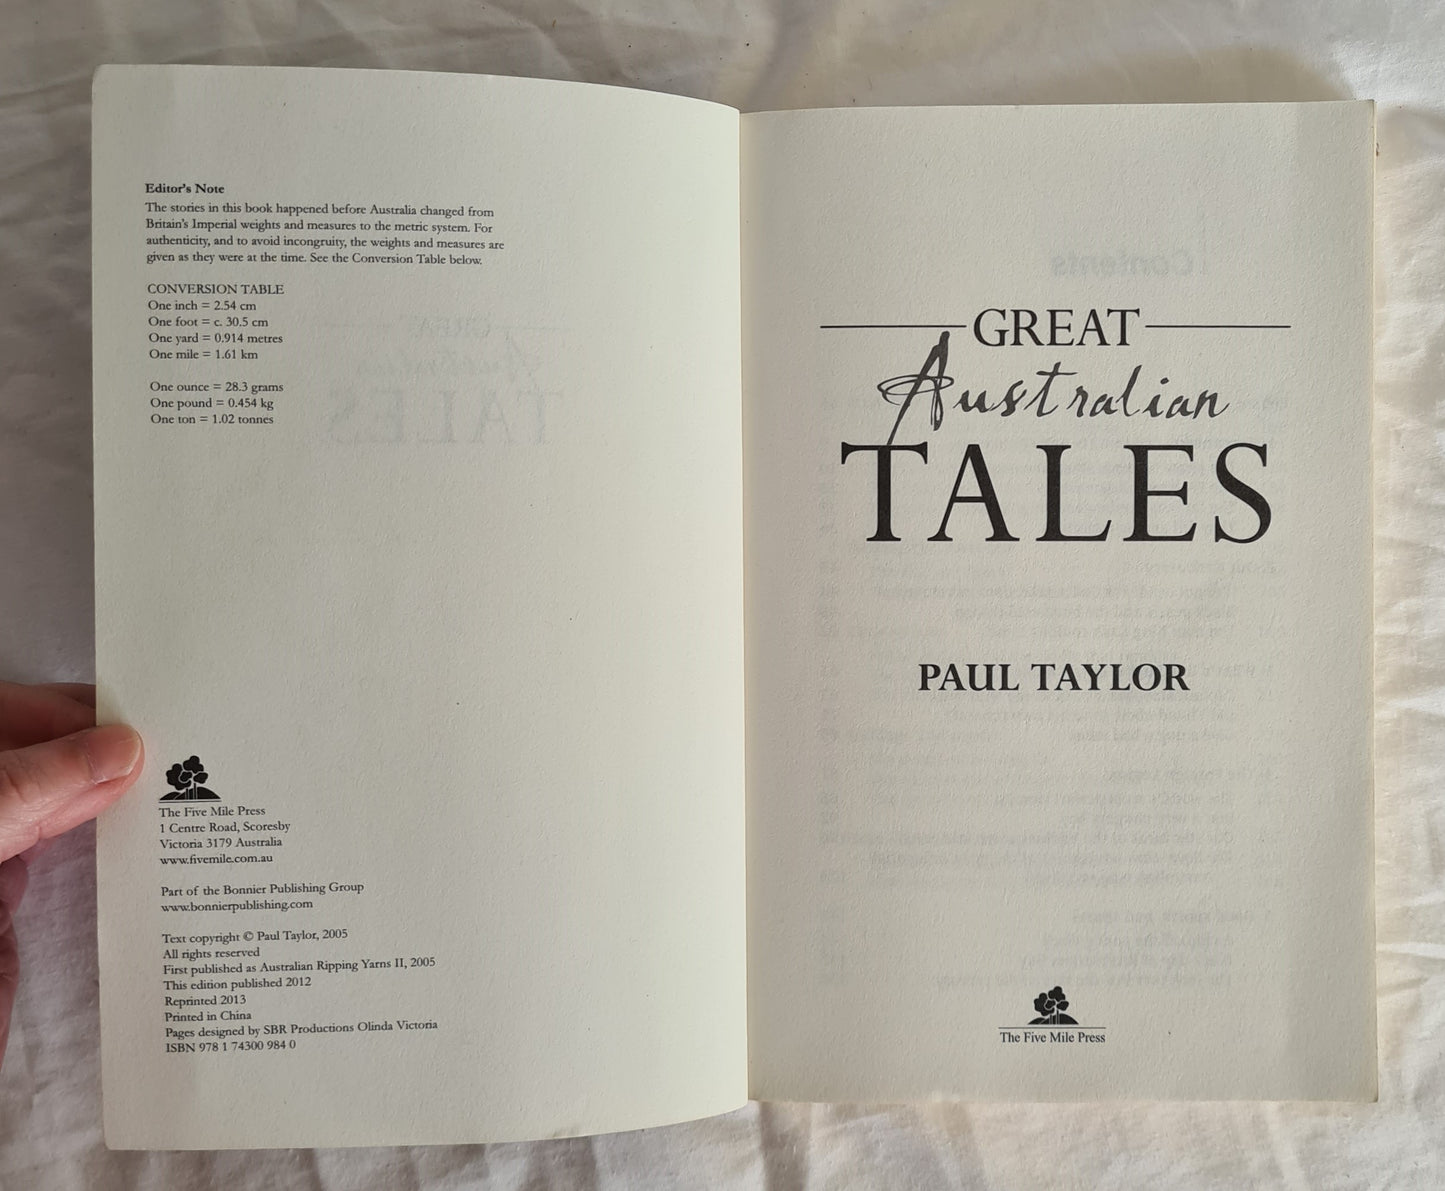 Great Australian Tales by Paul Taylor